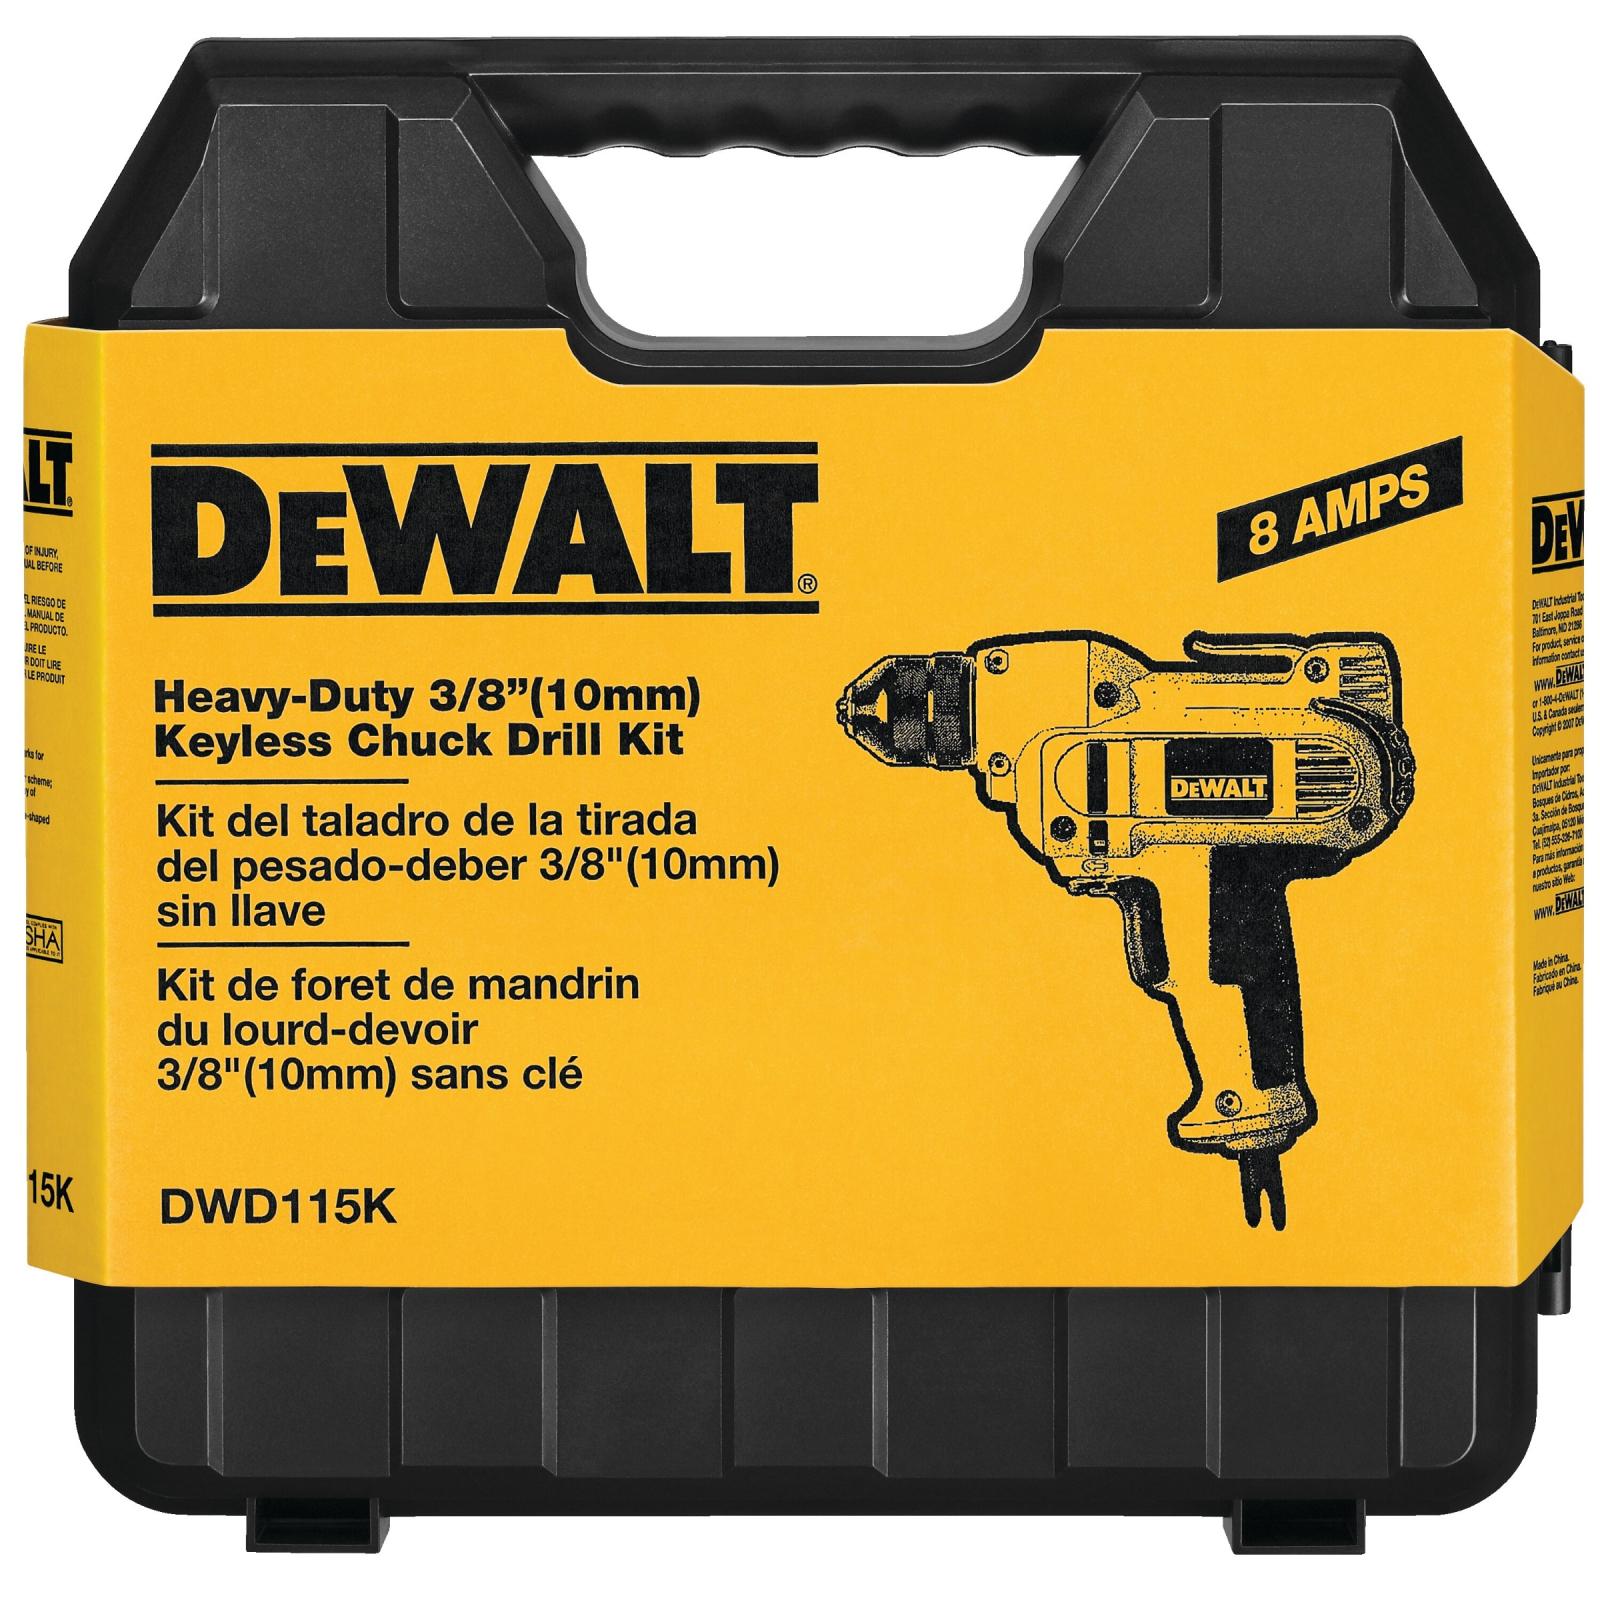 DeWalt 3/8" VSR Mid-Handle Drill Kit with Keyless Chuck